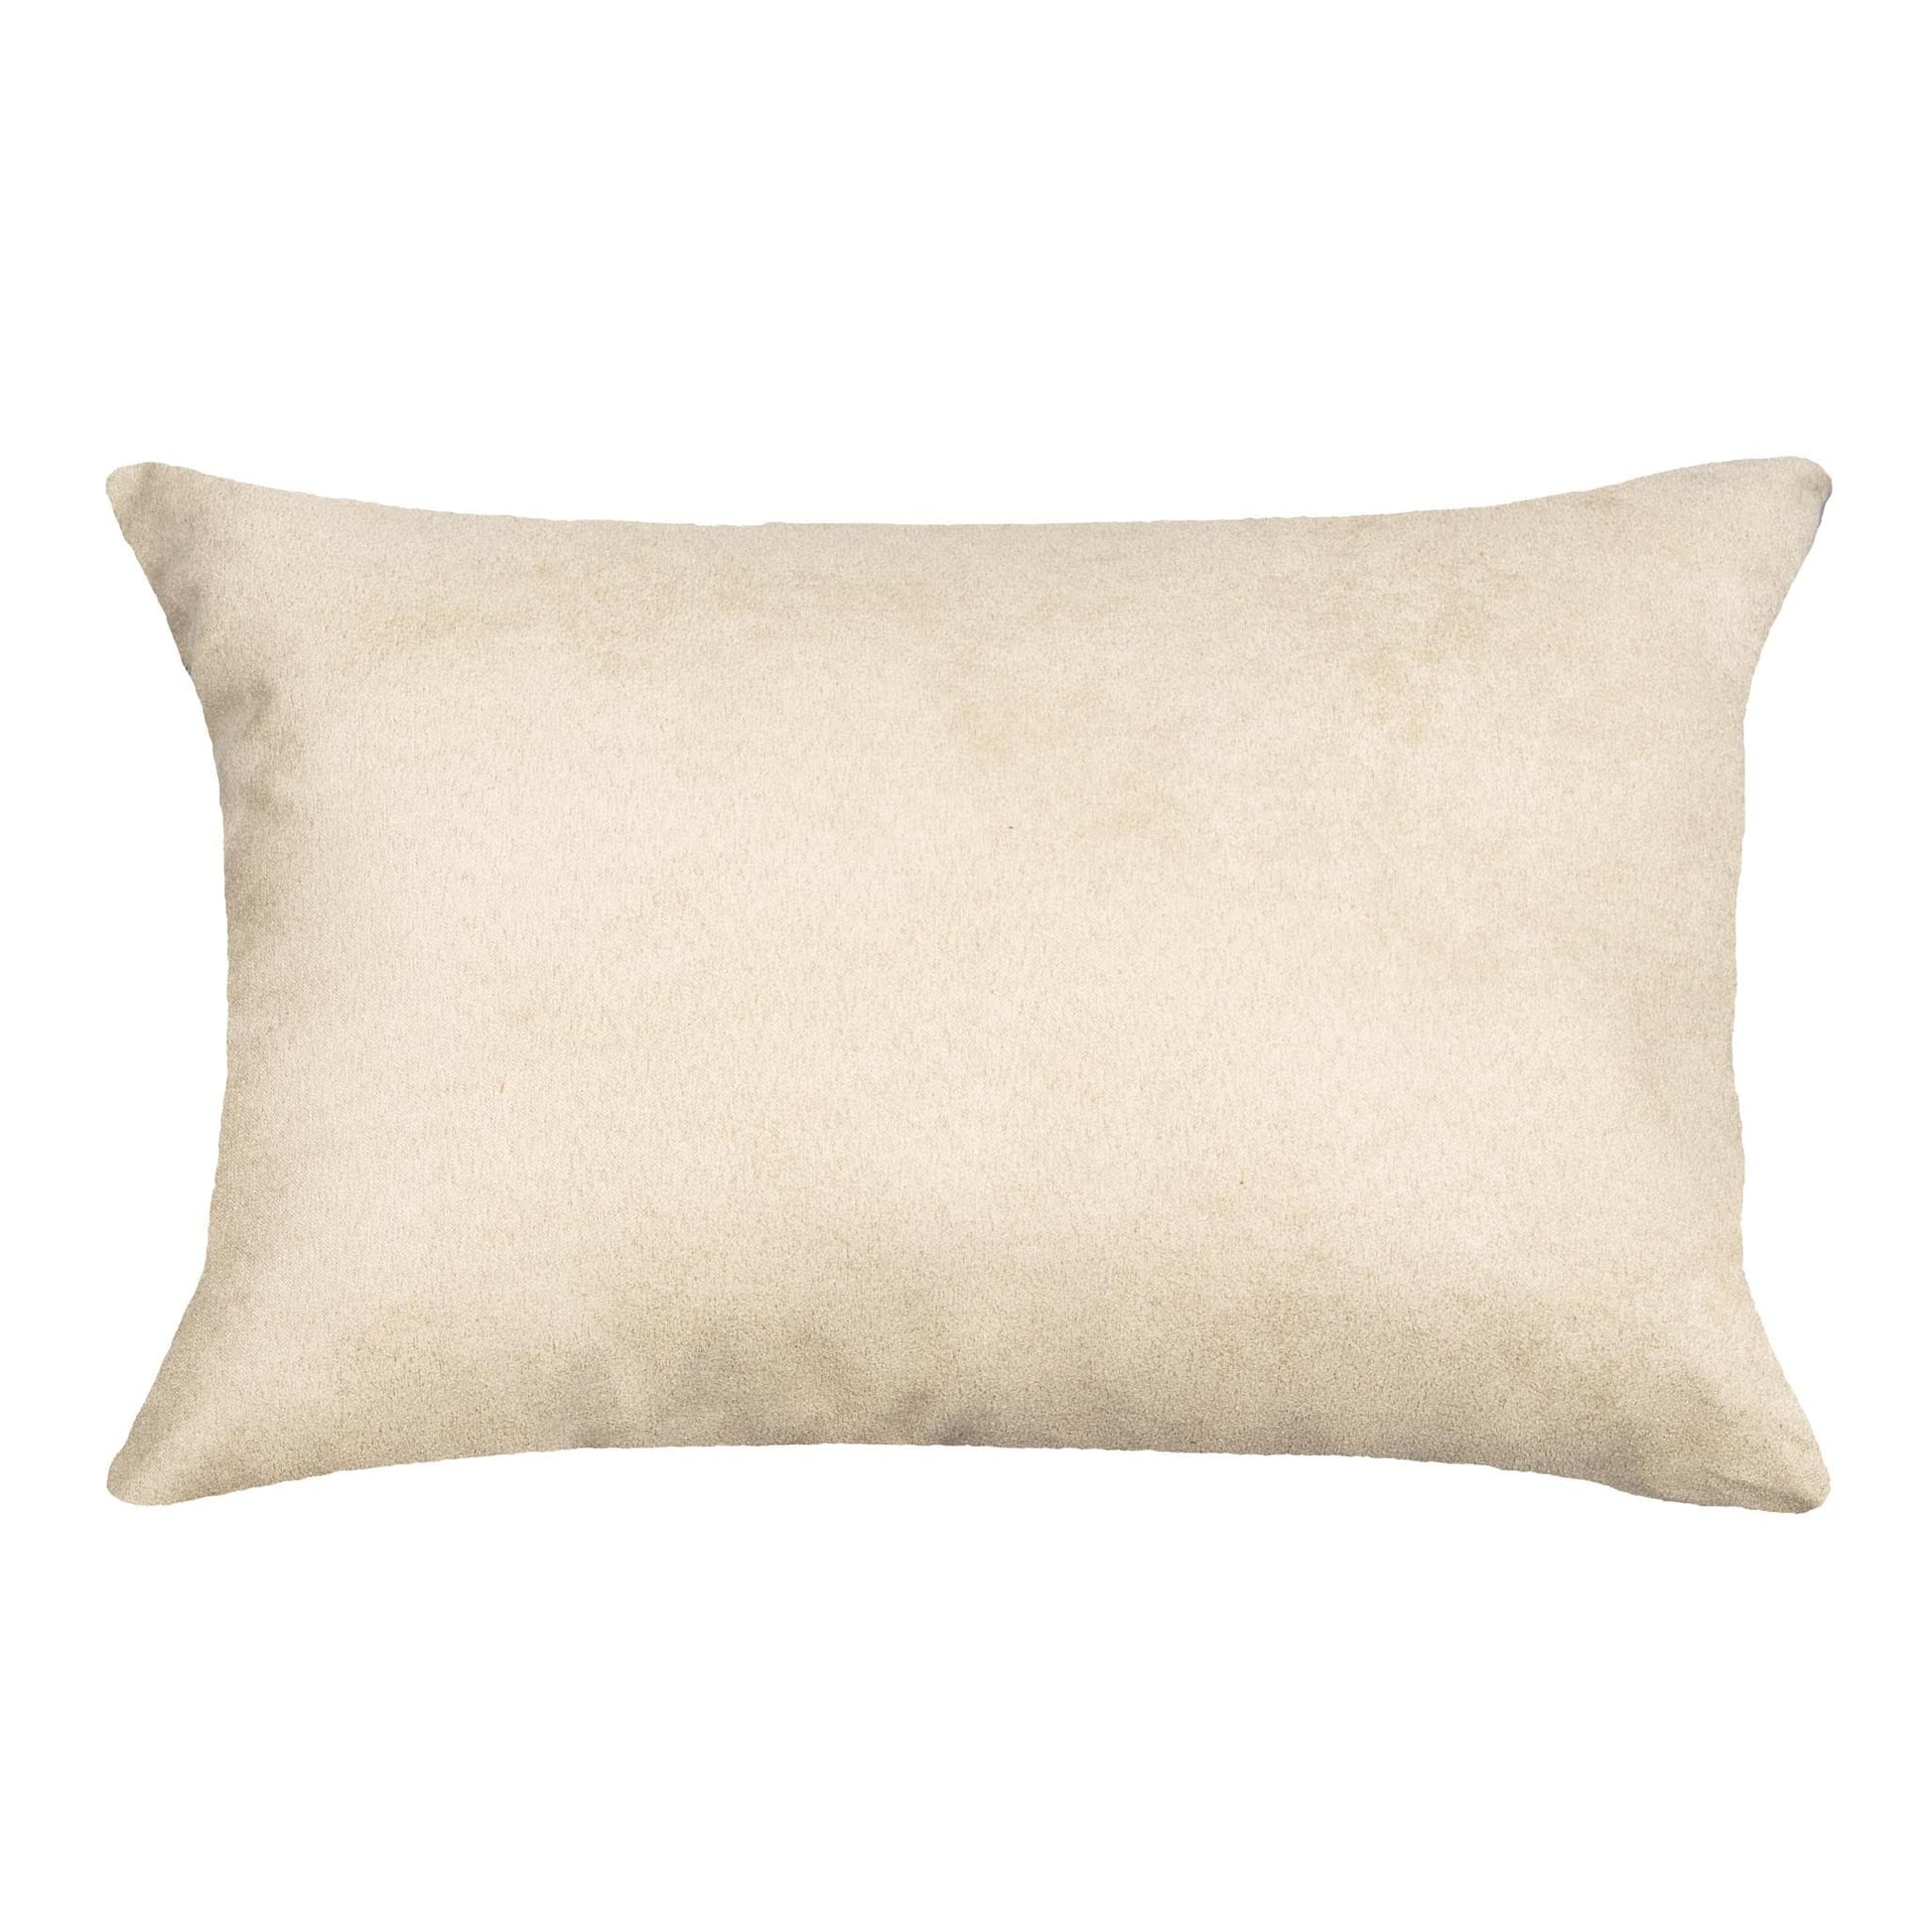 Gulls Point Decorative Pillow - Beach Decor Lumbar Pillow